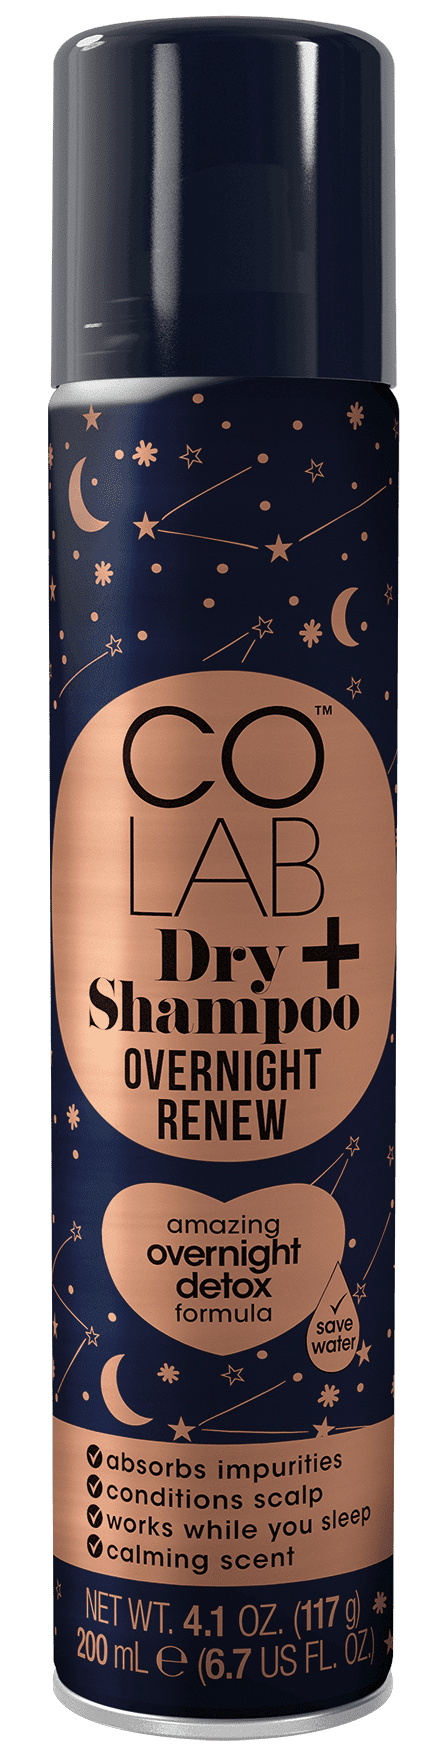 Colab přes noc Obnovit suchý šampon